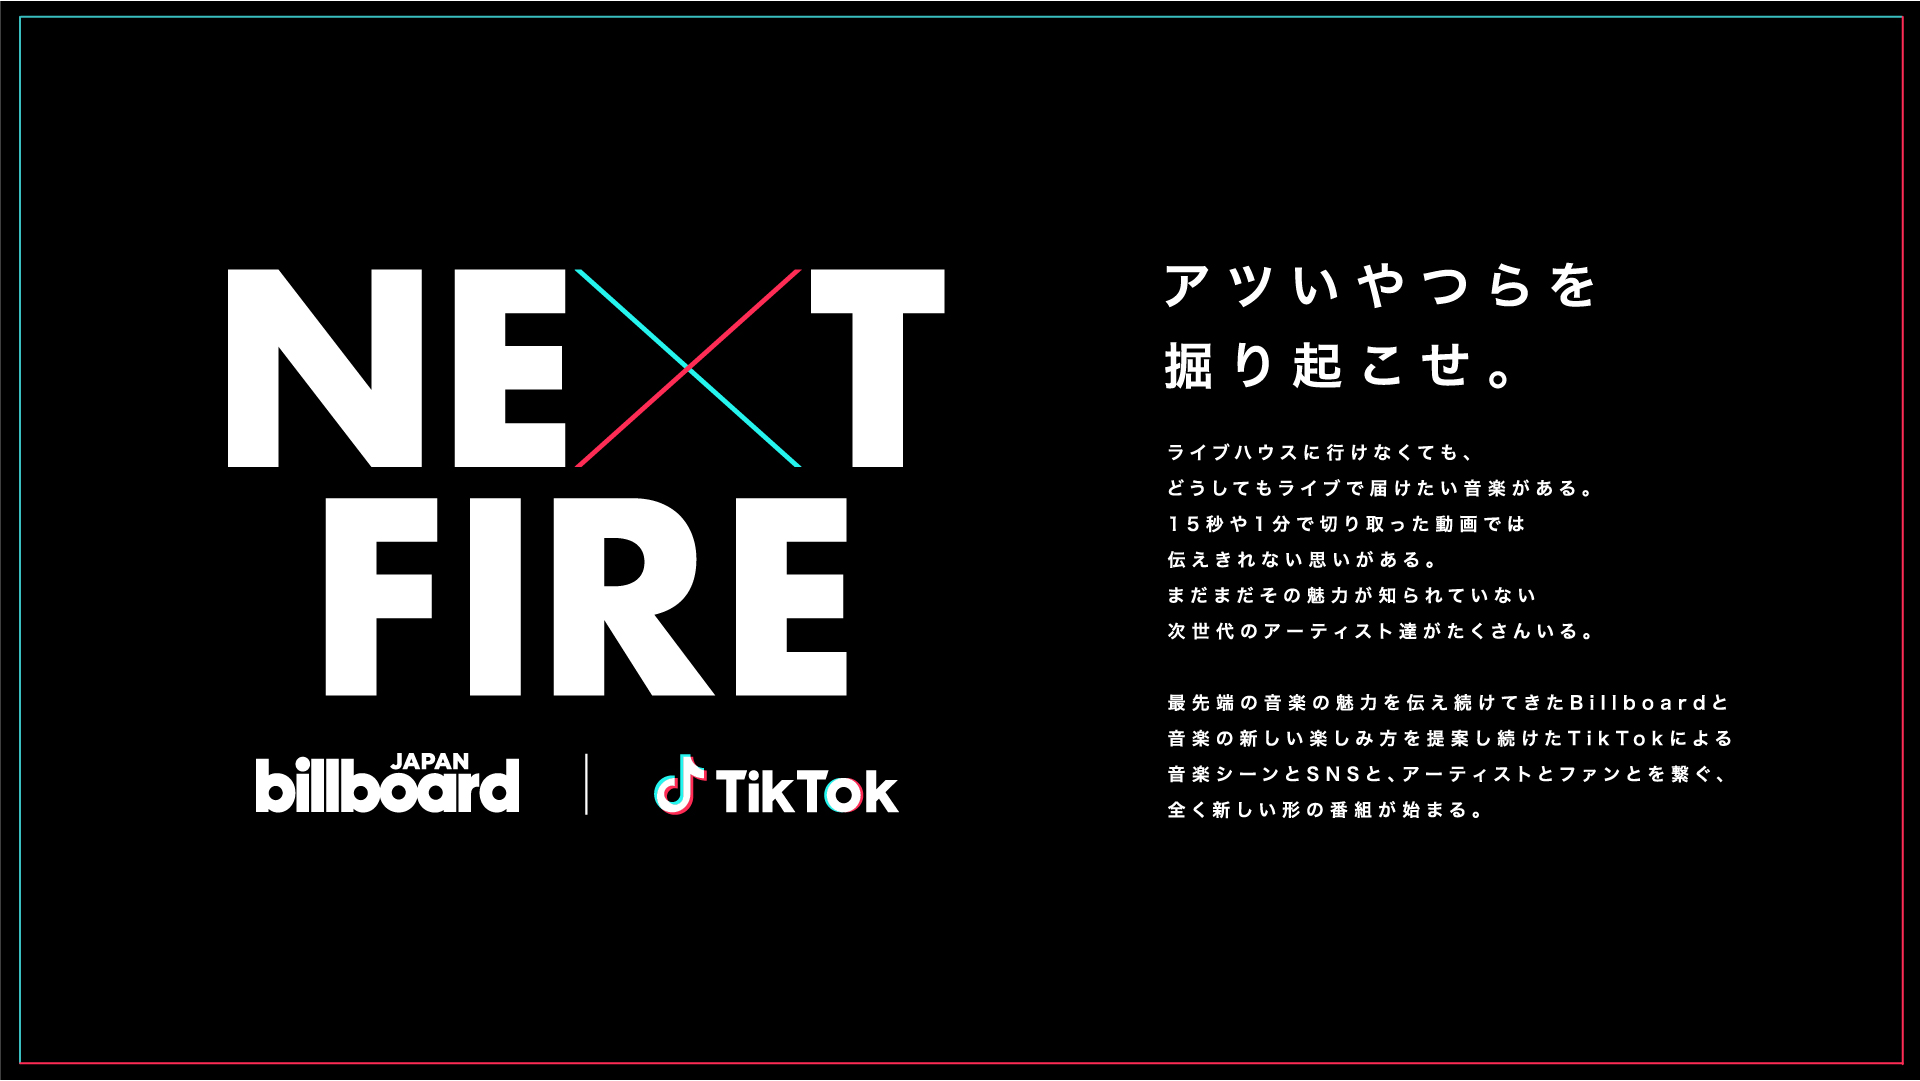 阪神コンテンツリンク Billboard Japan と Tiktok 注目のアーティストを発掘する新形態番組 Next Fire を開始 ニュースリリース 阪神電気鉄道株式会社